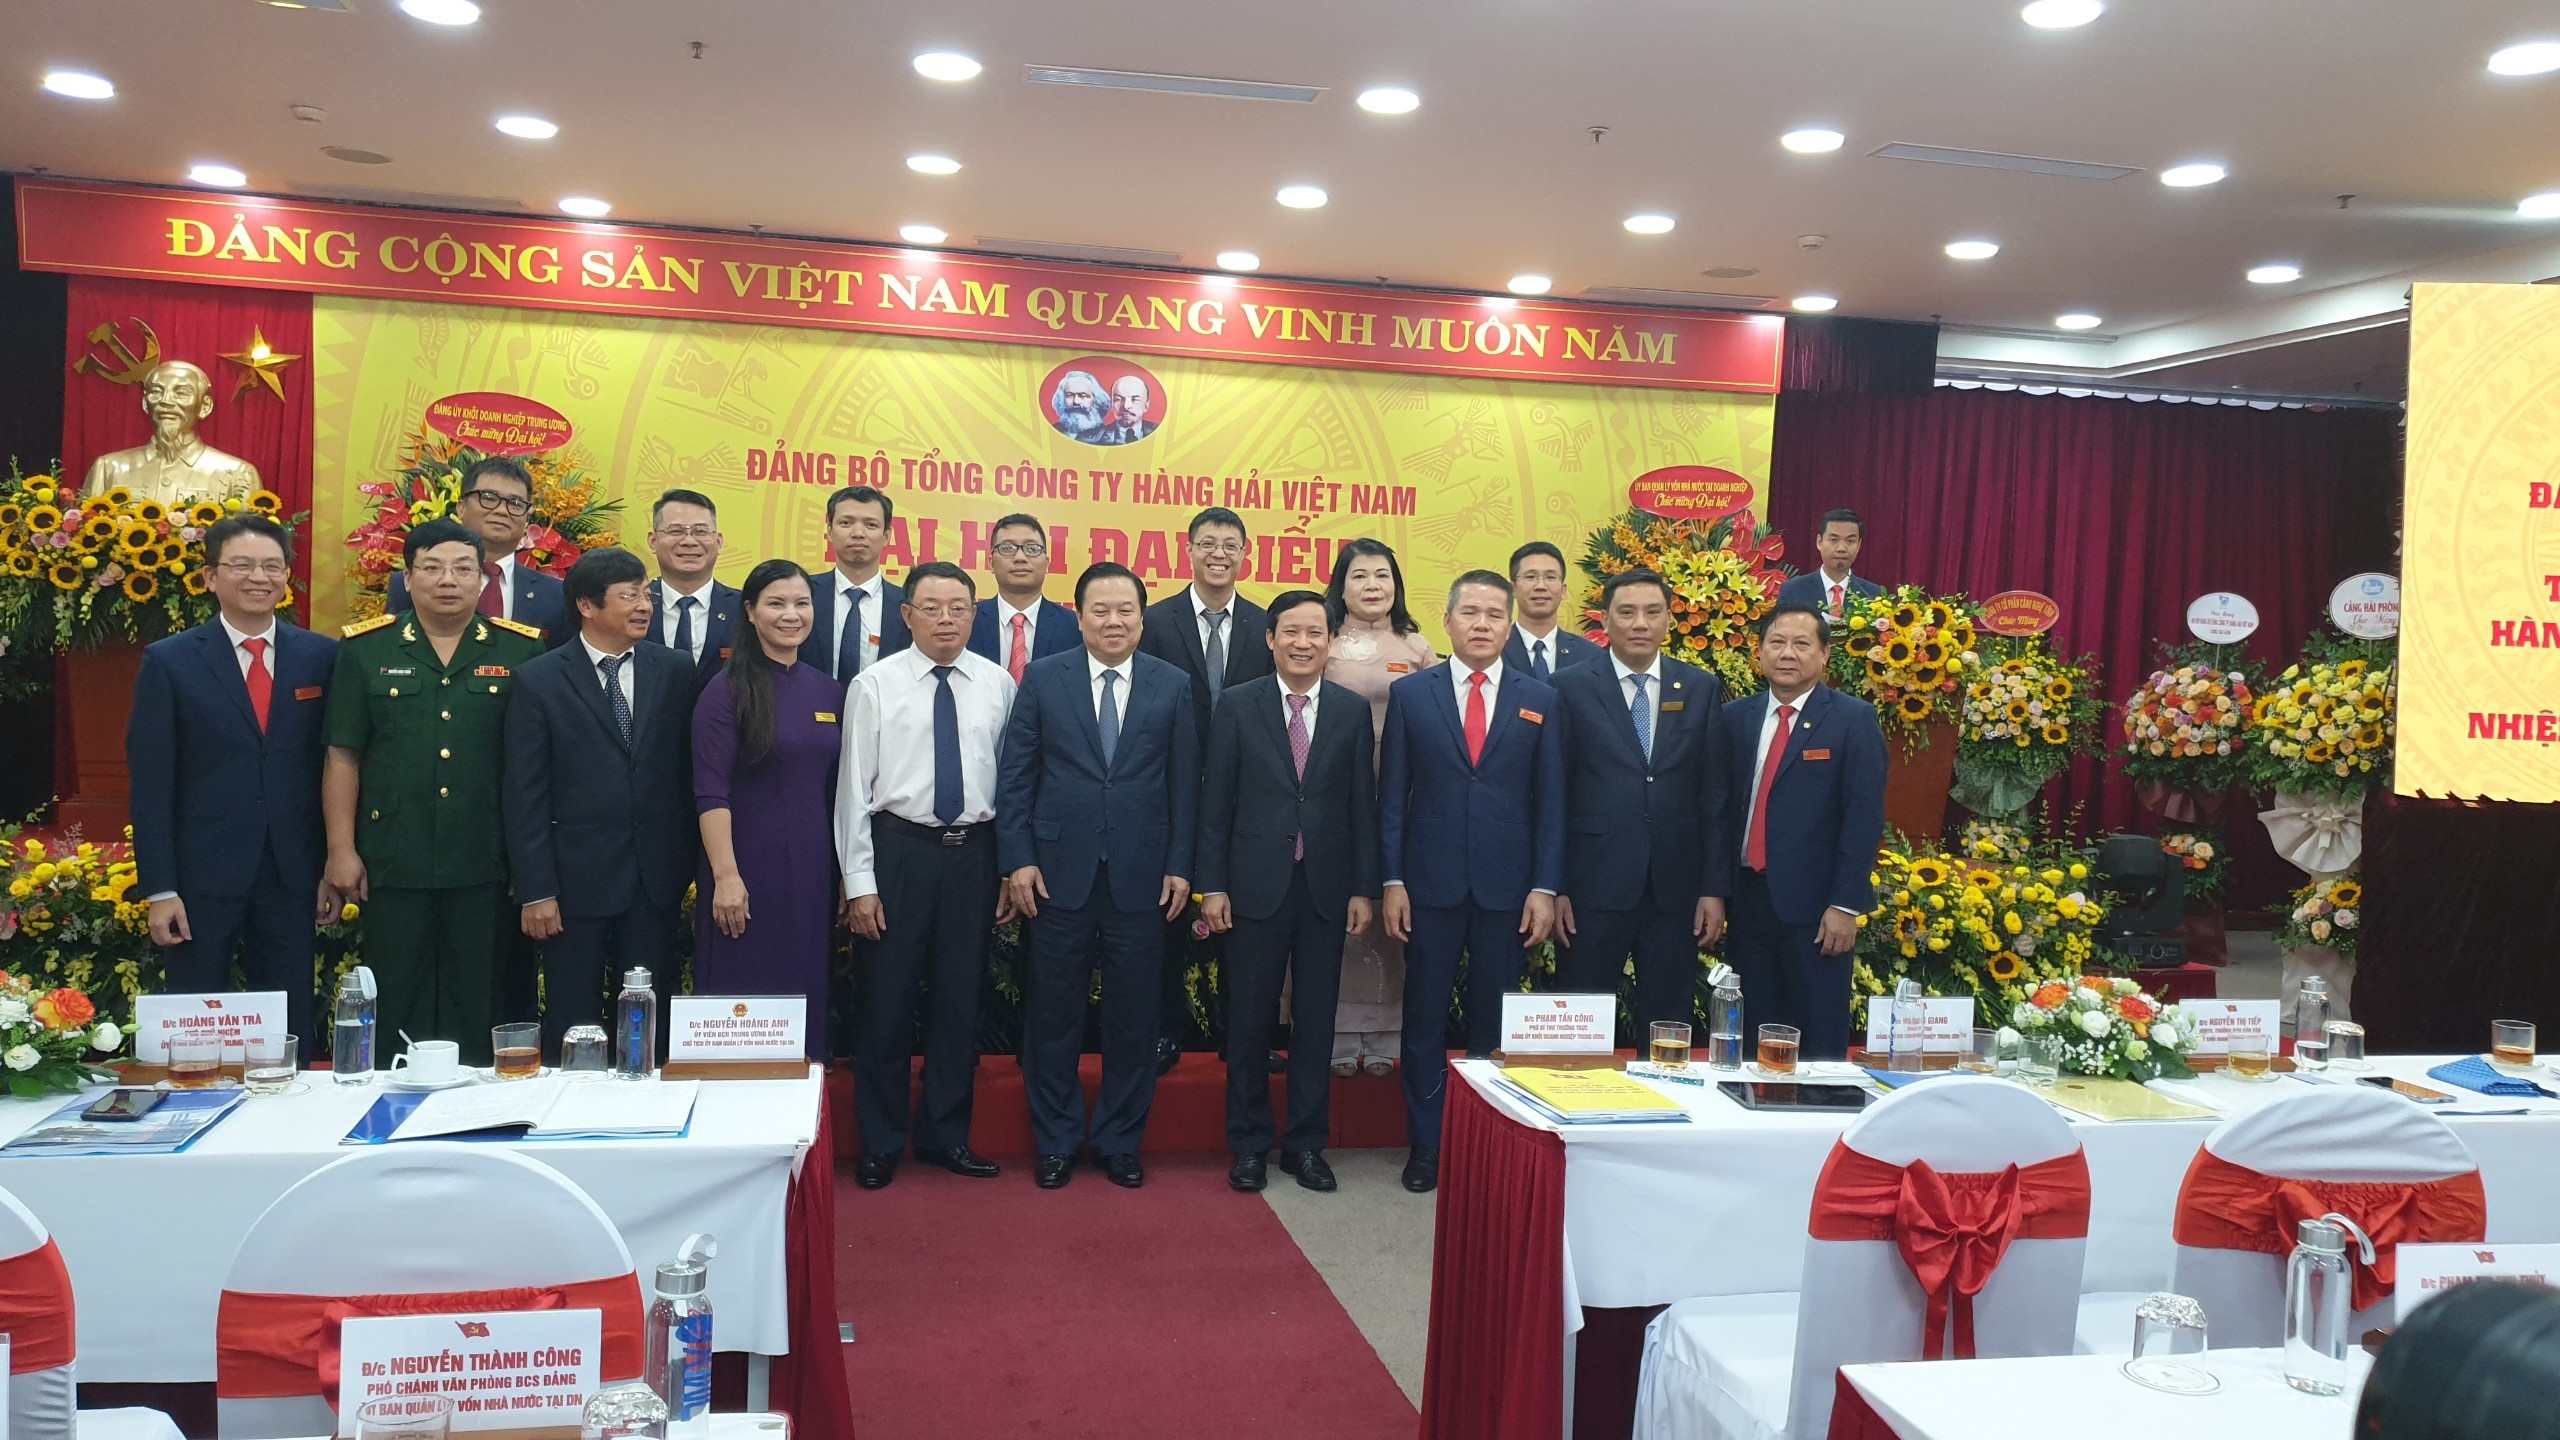 Tham dự Đại hội đại biểu Đảng bộ Tổng công ty Hàng hải Việt Nam lần thứ VI nhiệm kỳ 2020 - 2025.